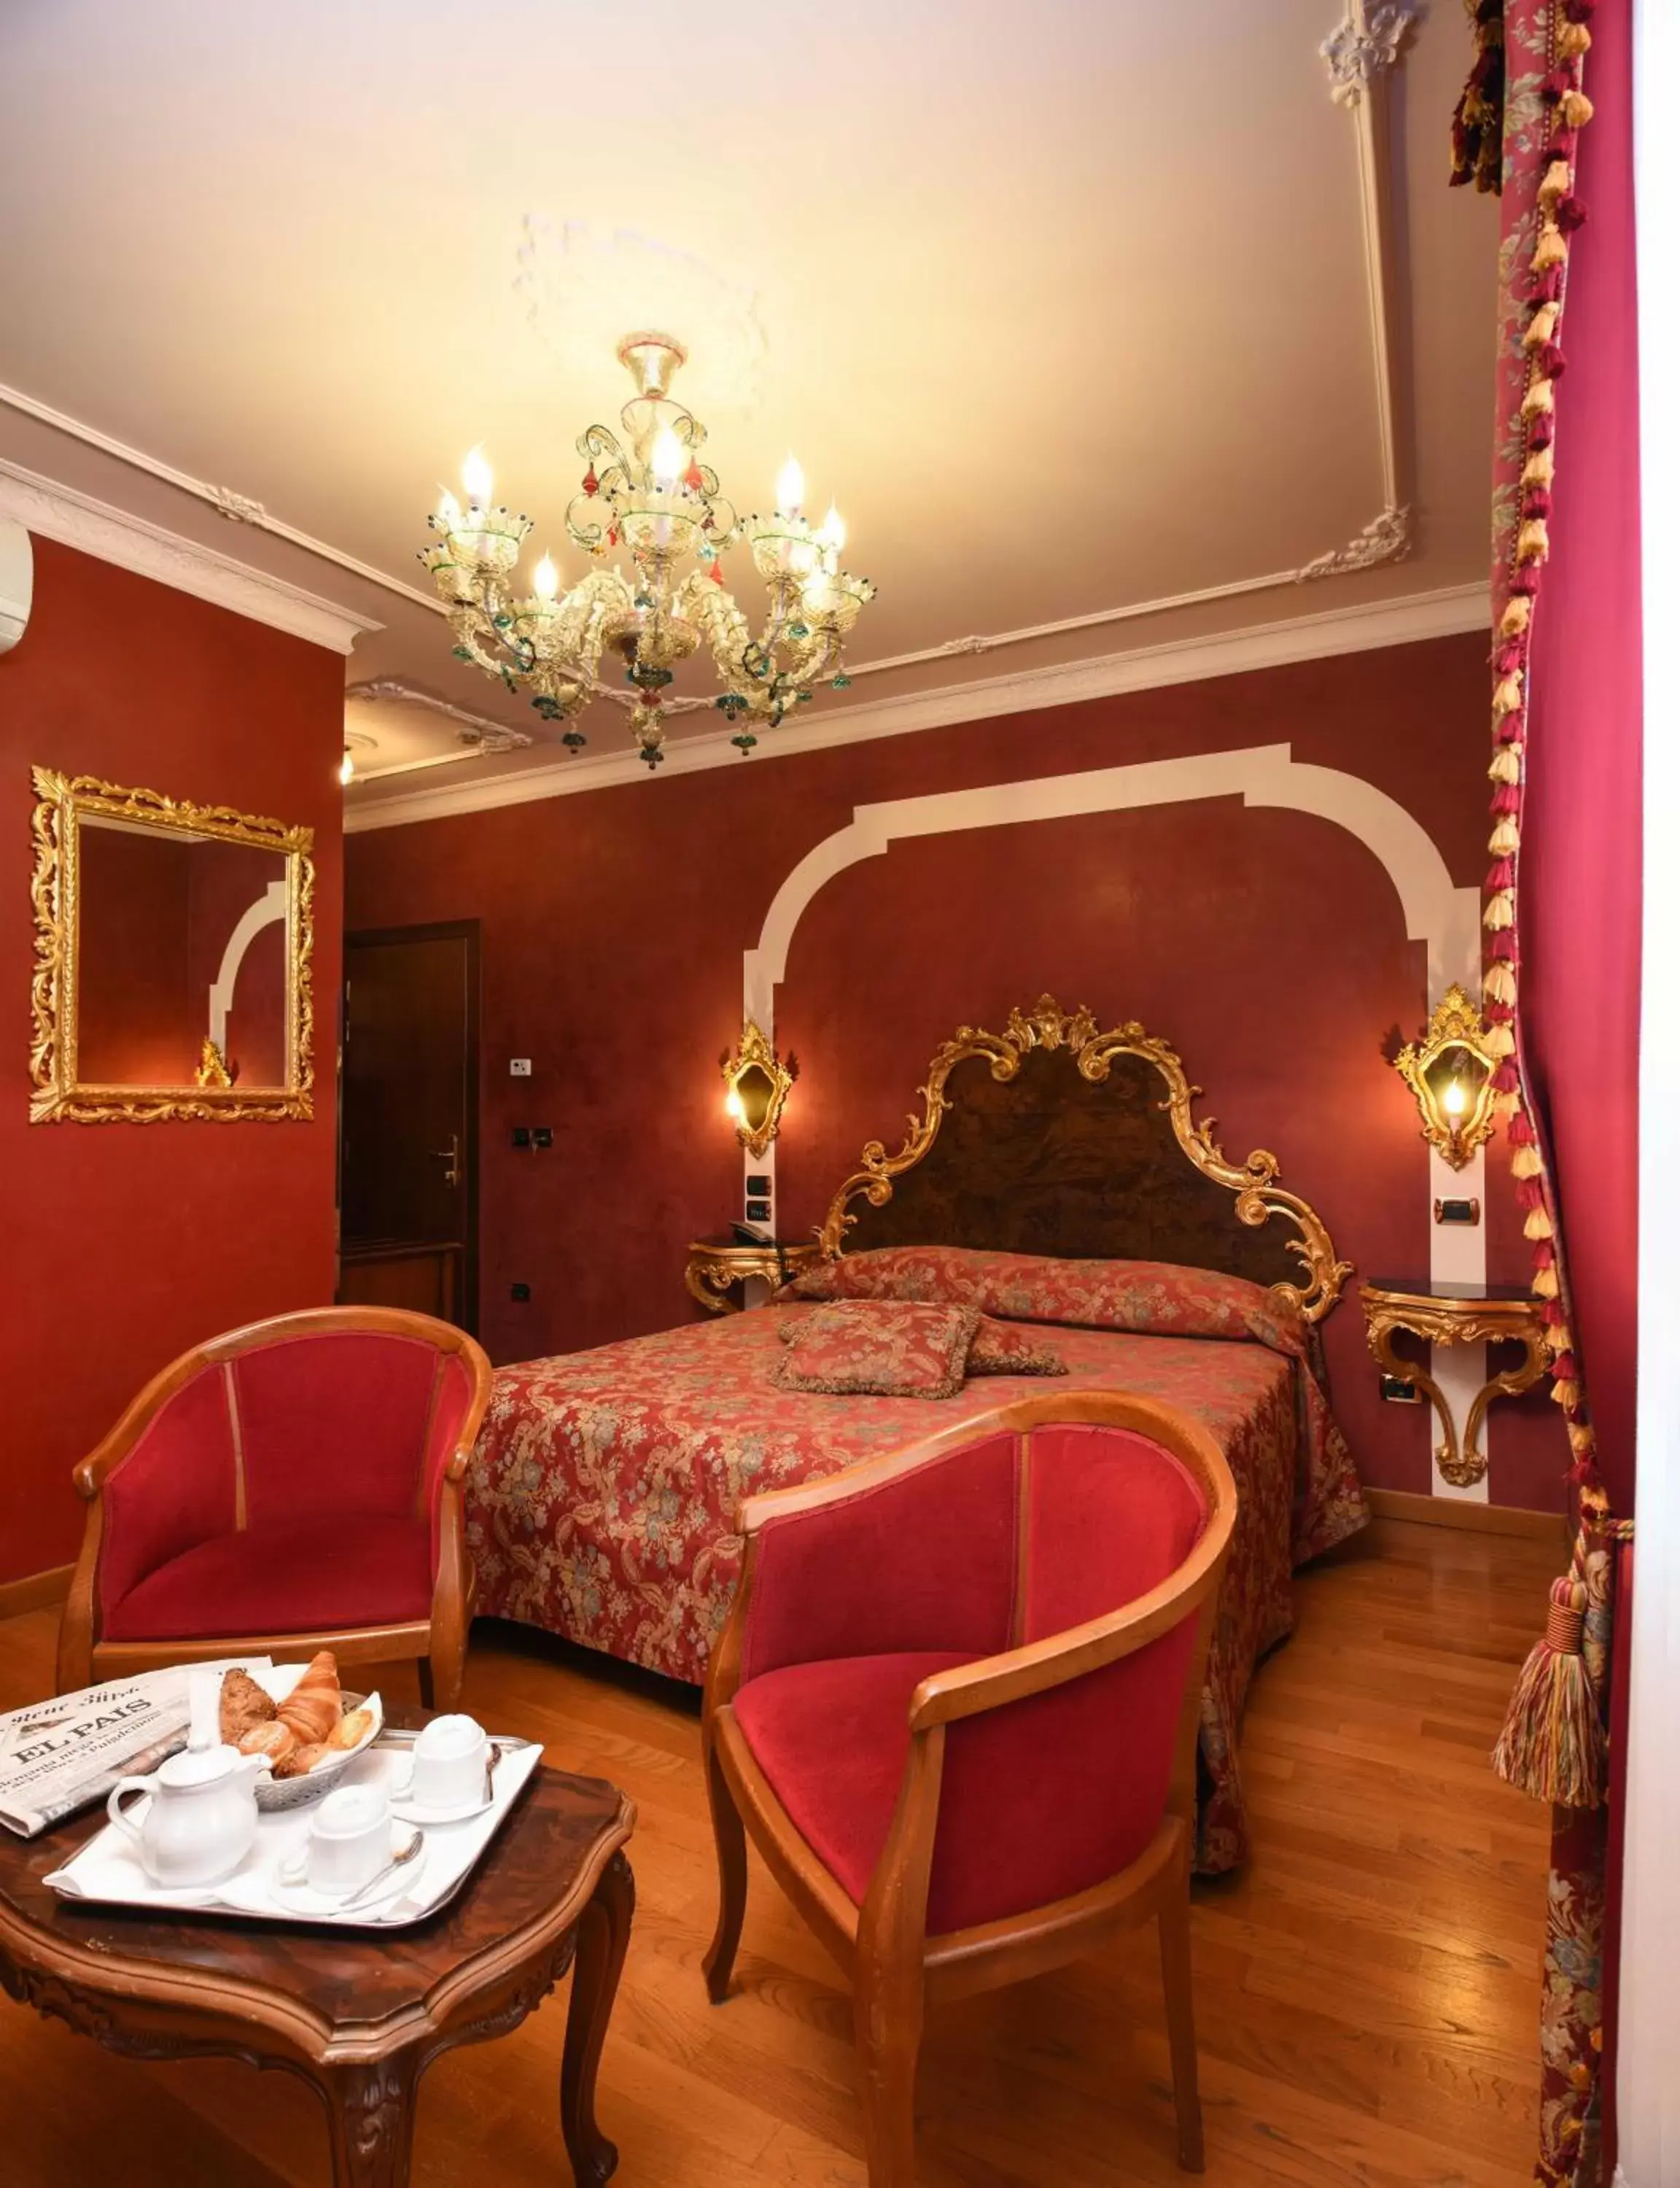 Bed in Hotel Ca' Alvise